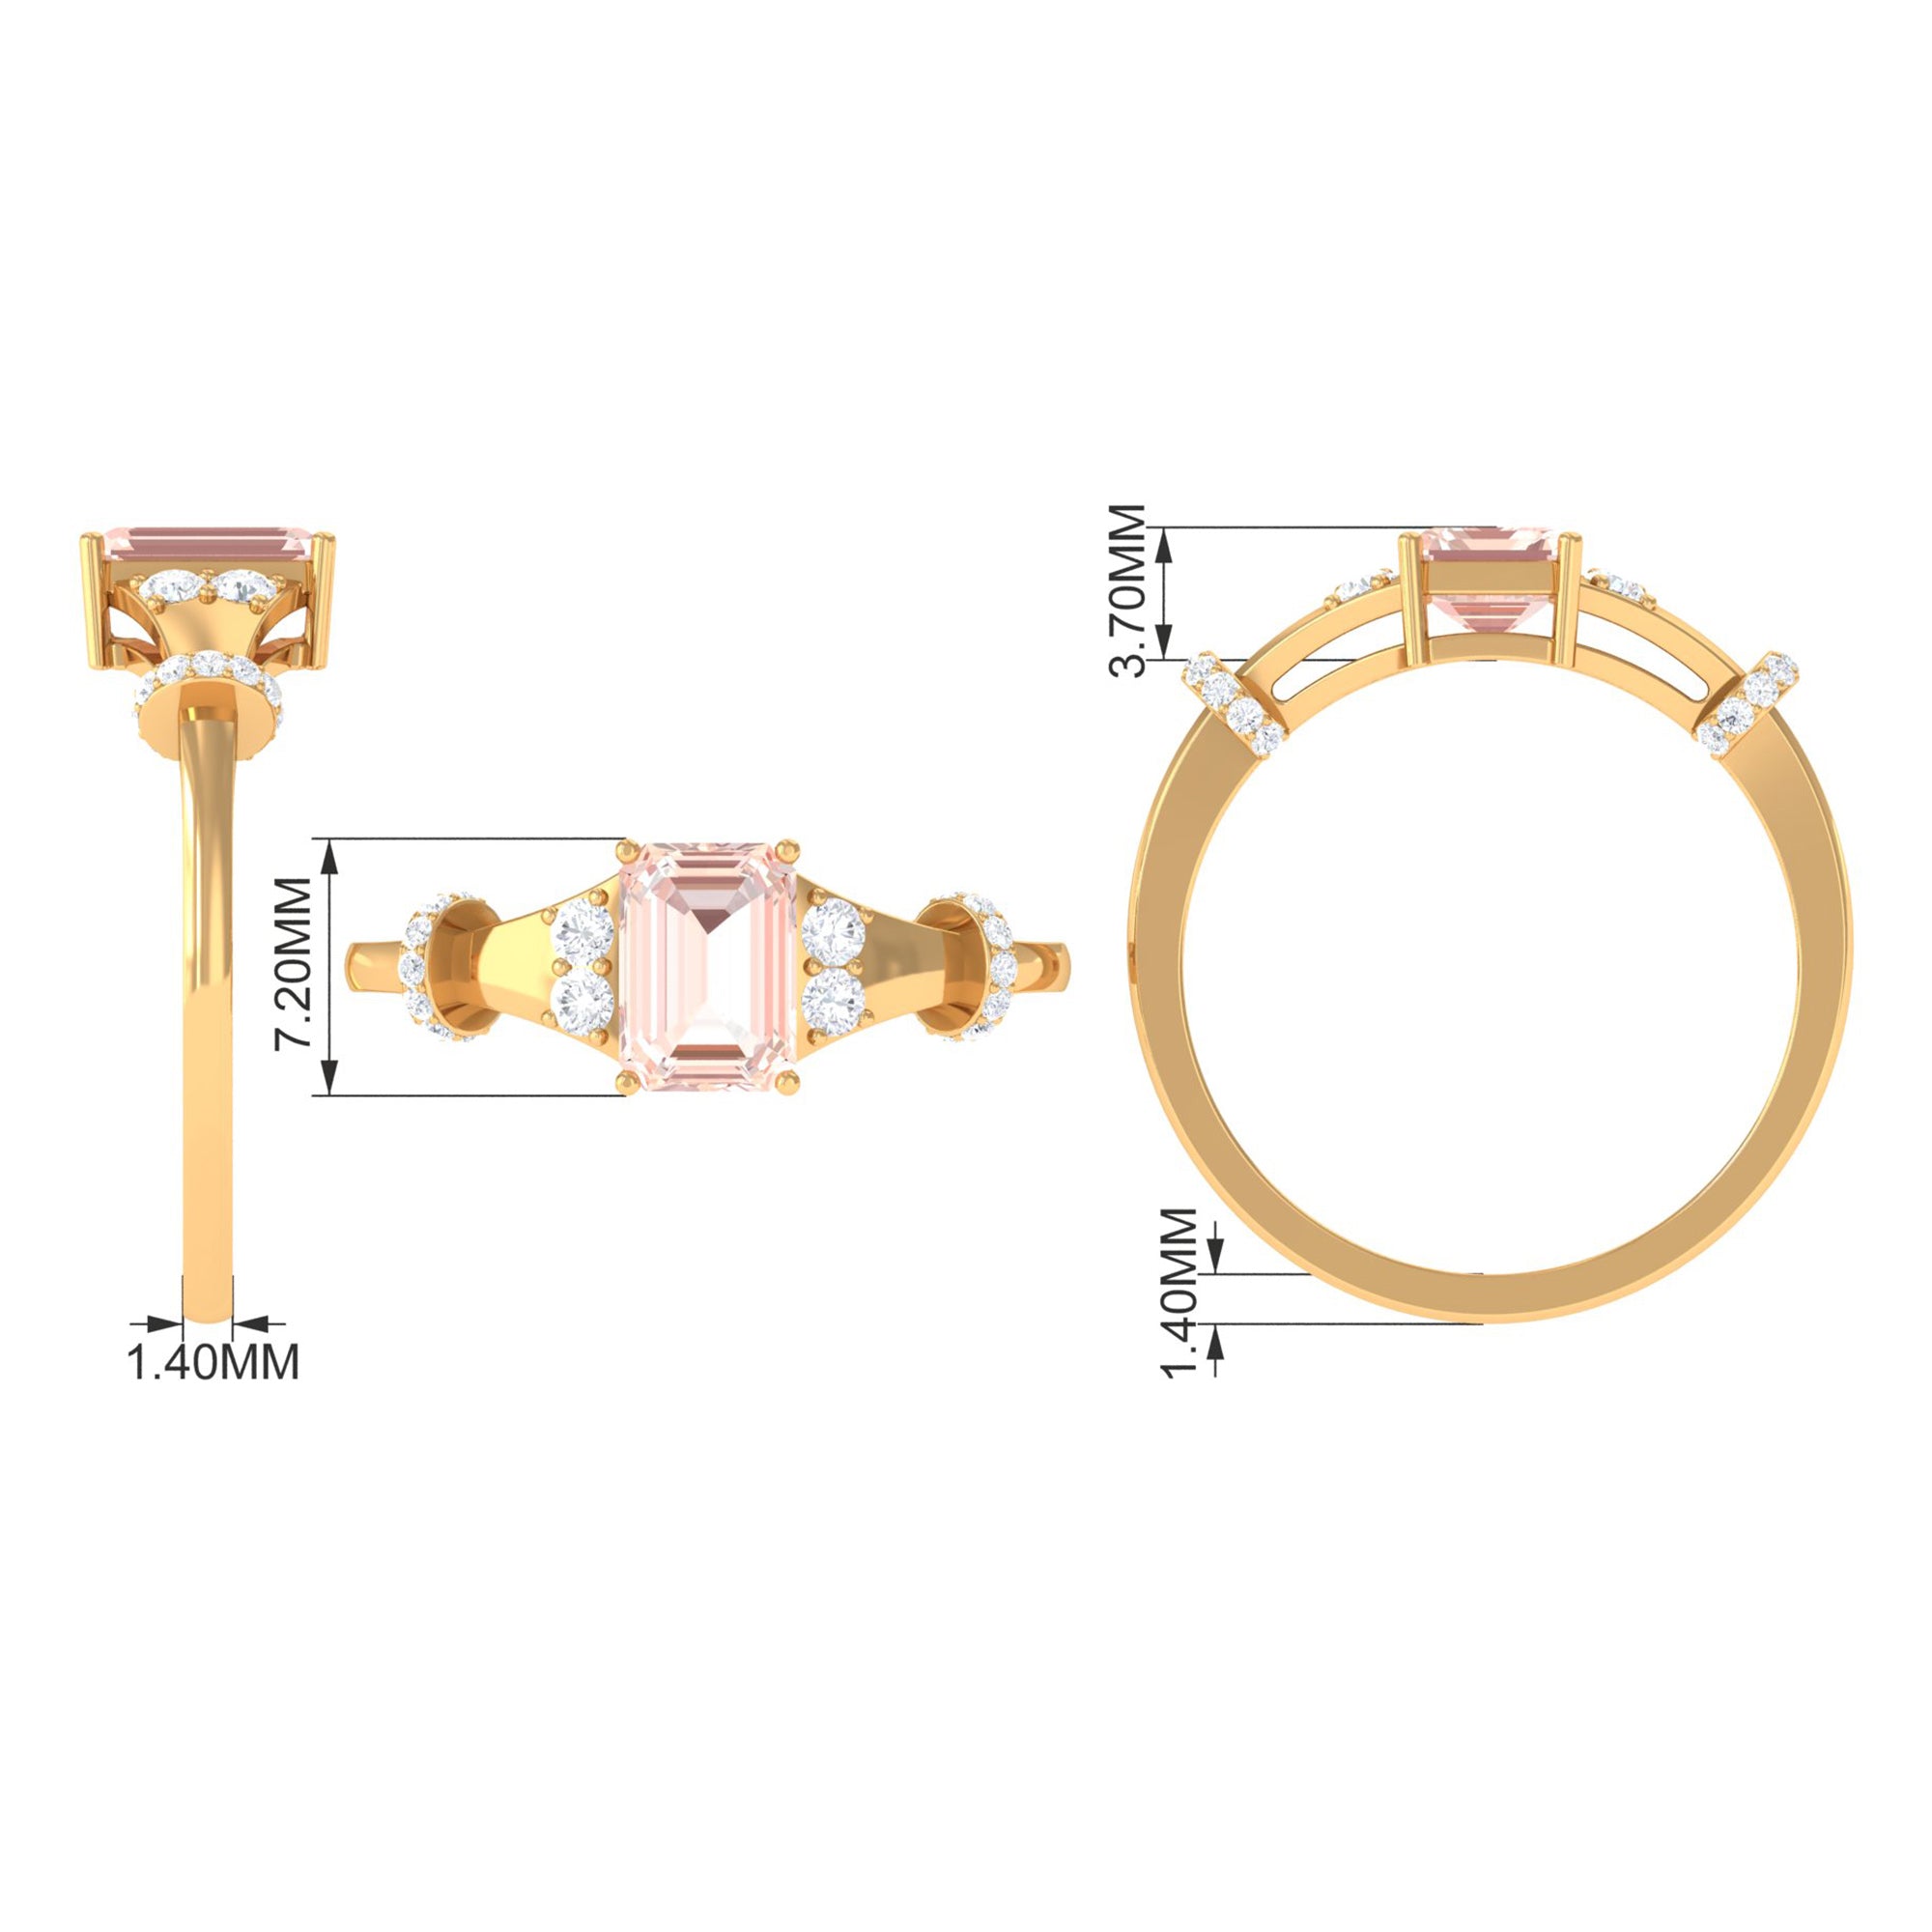 Rosec Jewels-1.25 Ct Designer Morganite and Diamond Engagement Ring